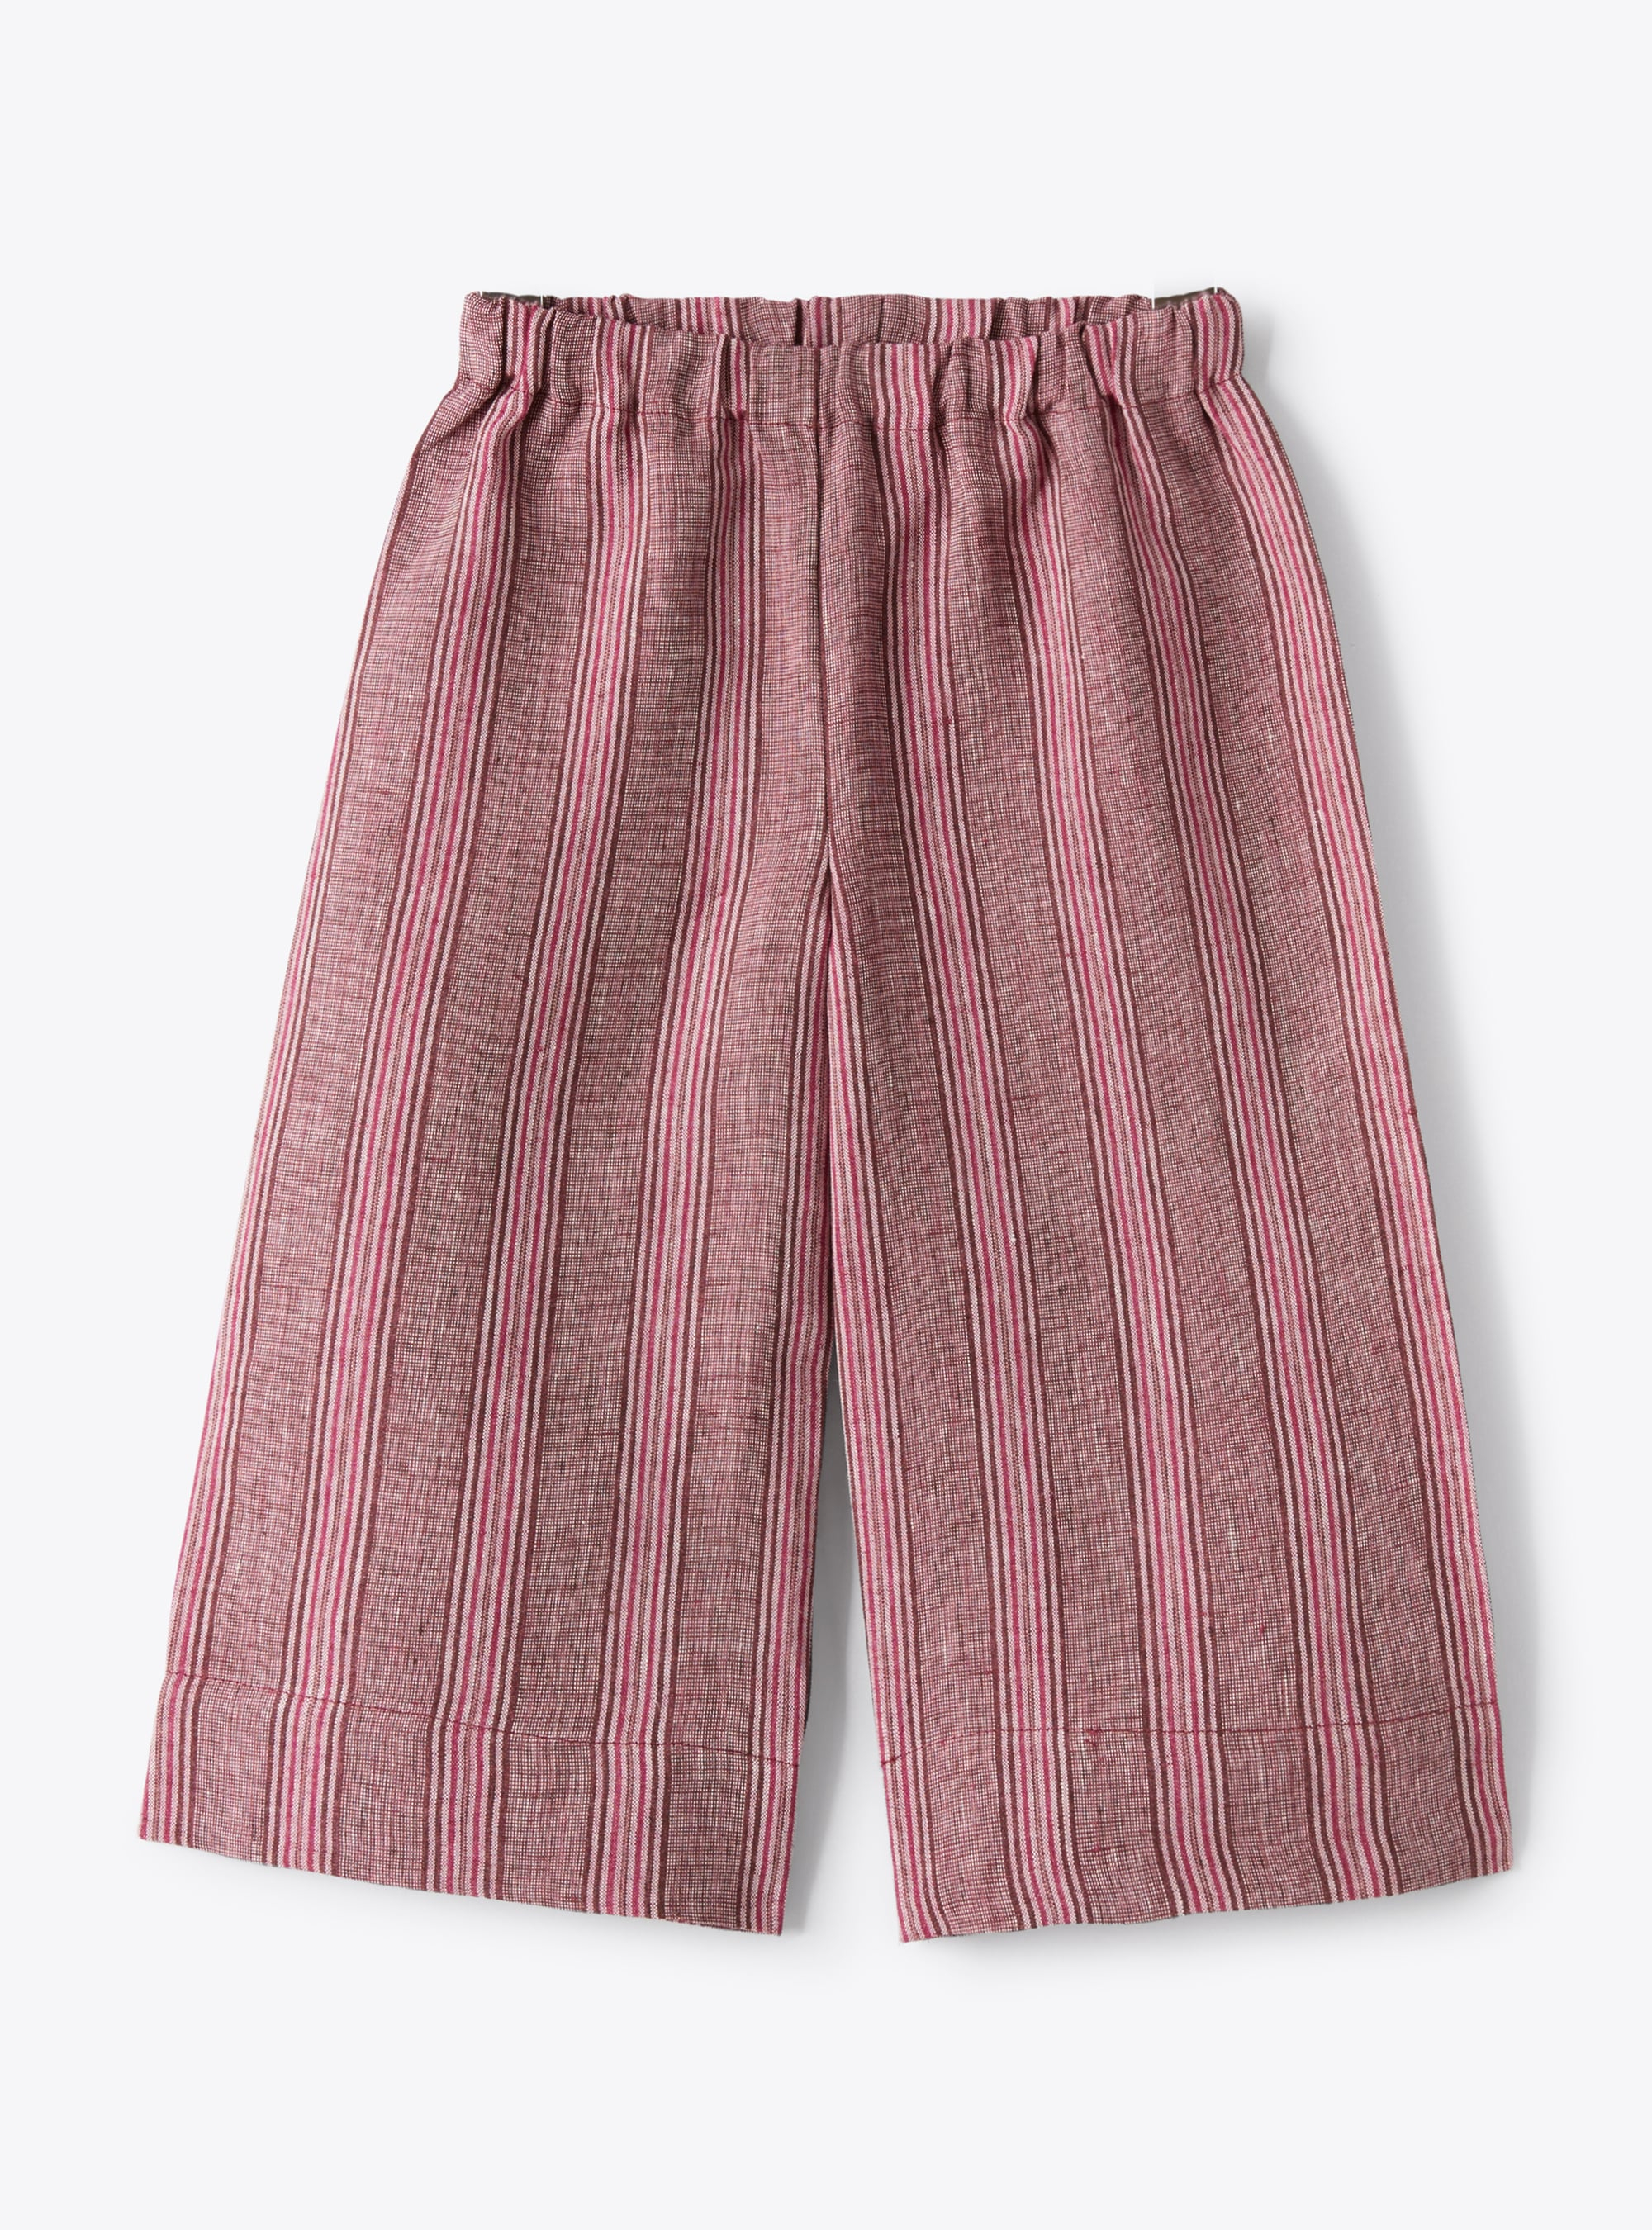 Pantalon capri en lin chiné à rayures violet oignon rouge | Il Gufo